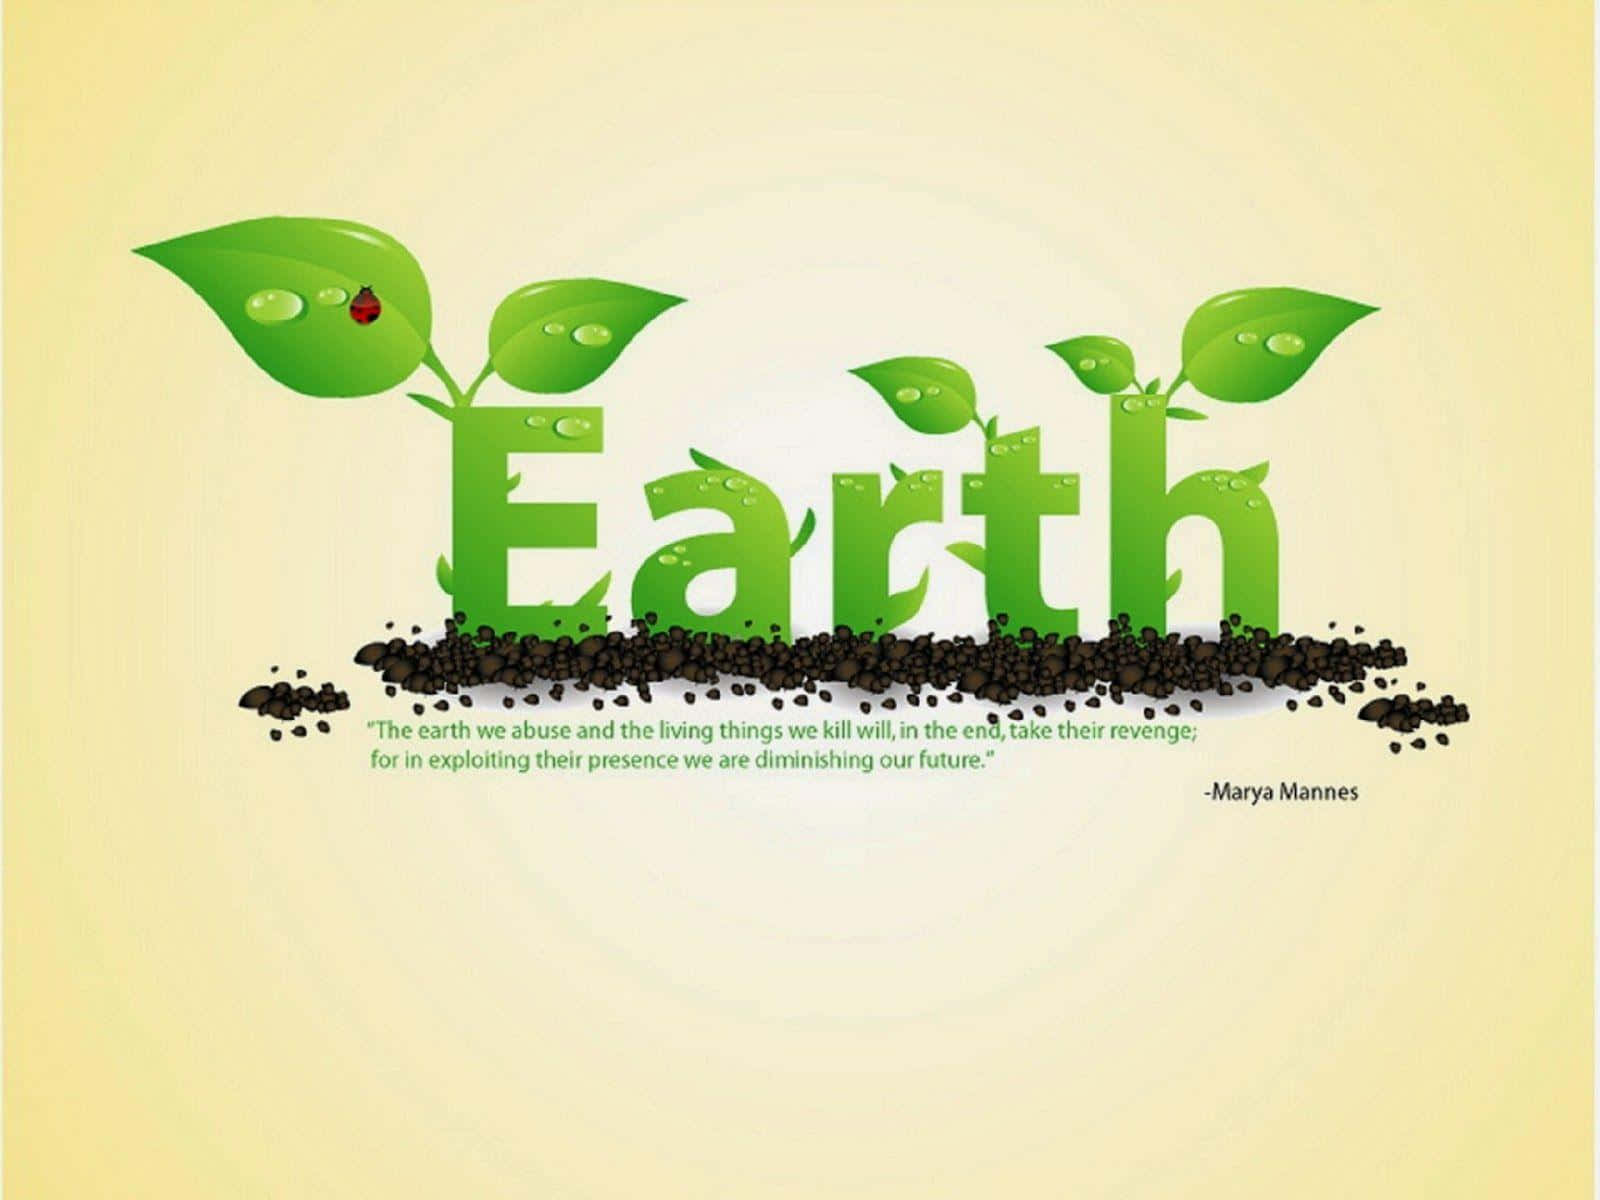 Earthday Er En Tid Til At Fejre Den Smukke Planet, Vi Lever På Og At Sætte Pris På De Naturlige Vidundre, Der Omgiver Os.